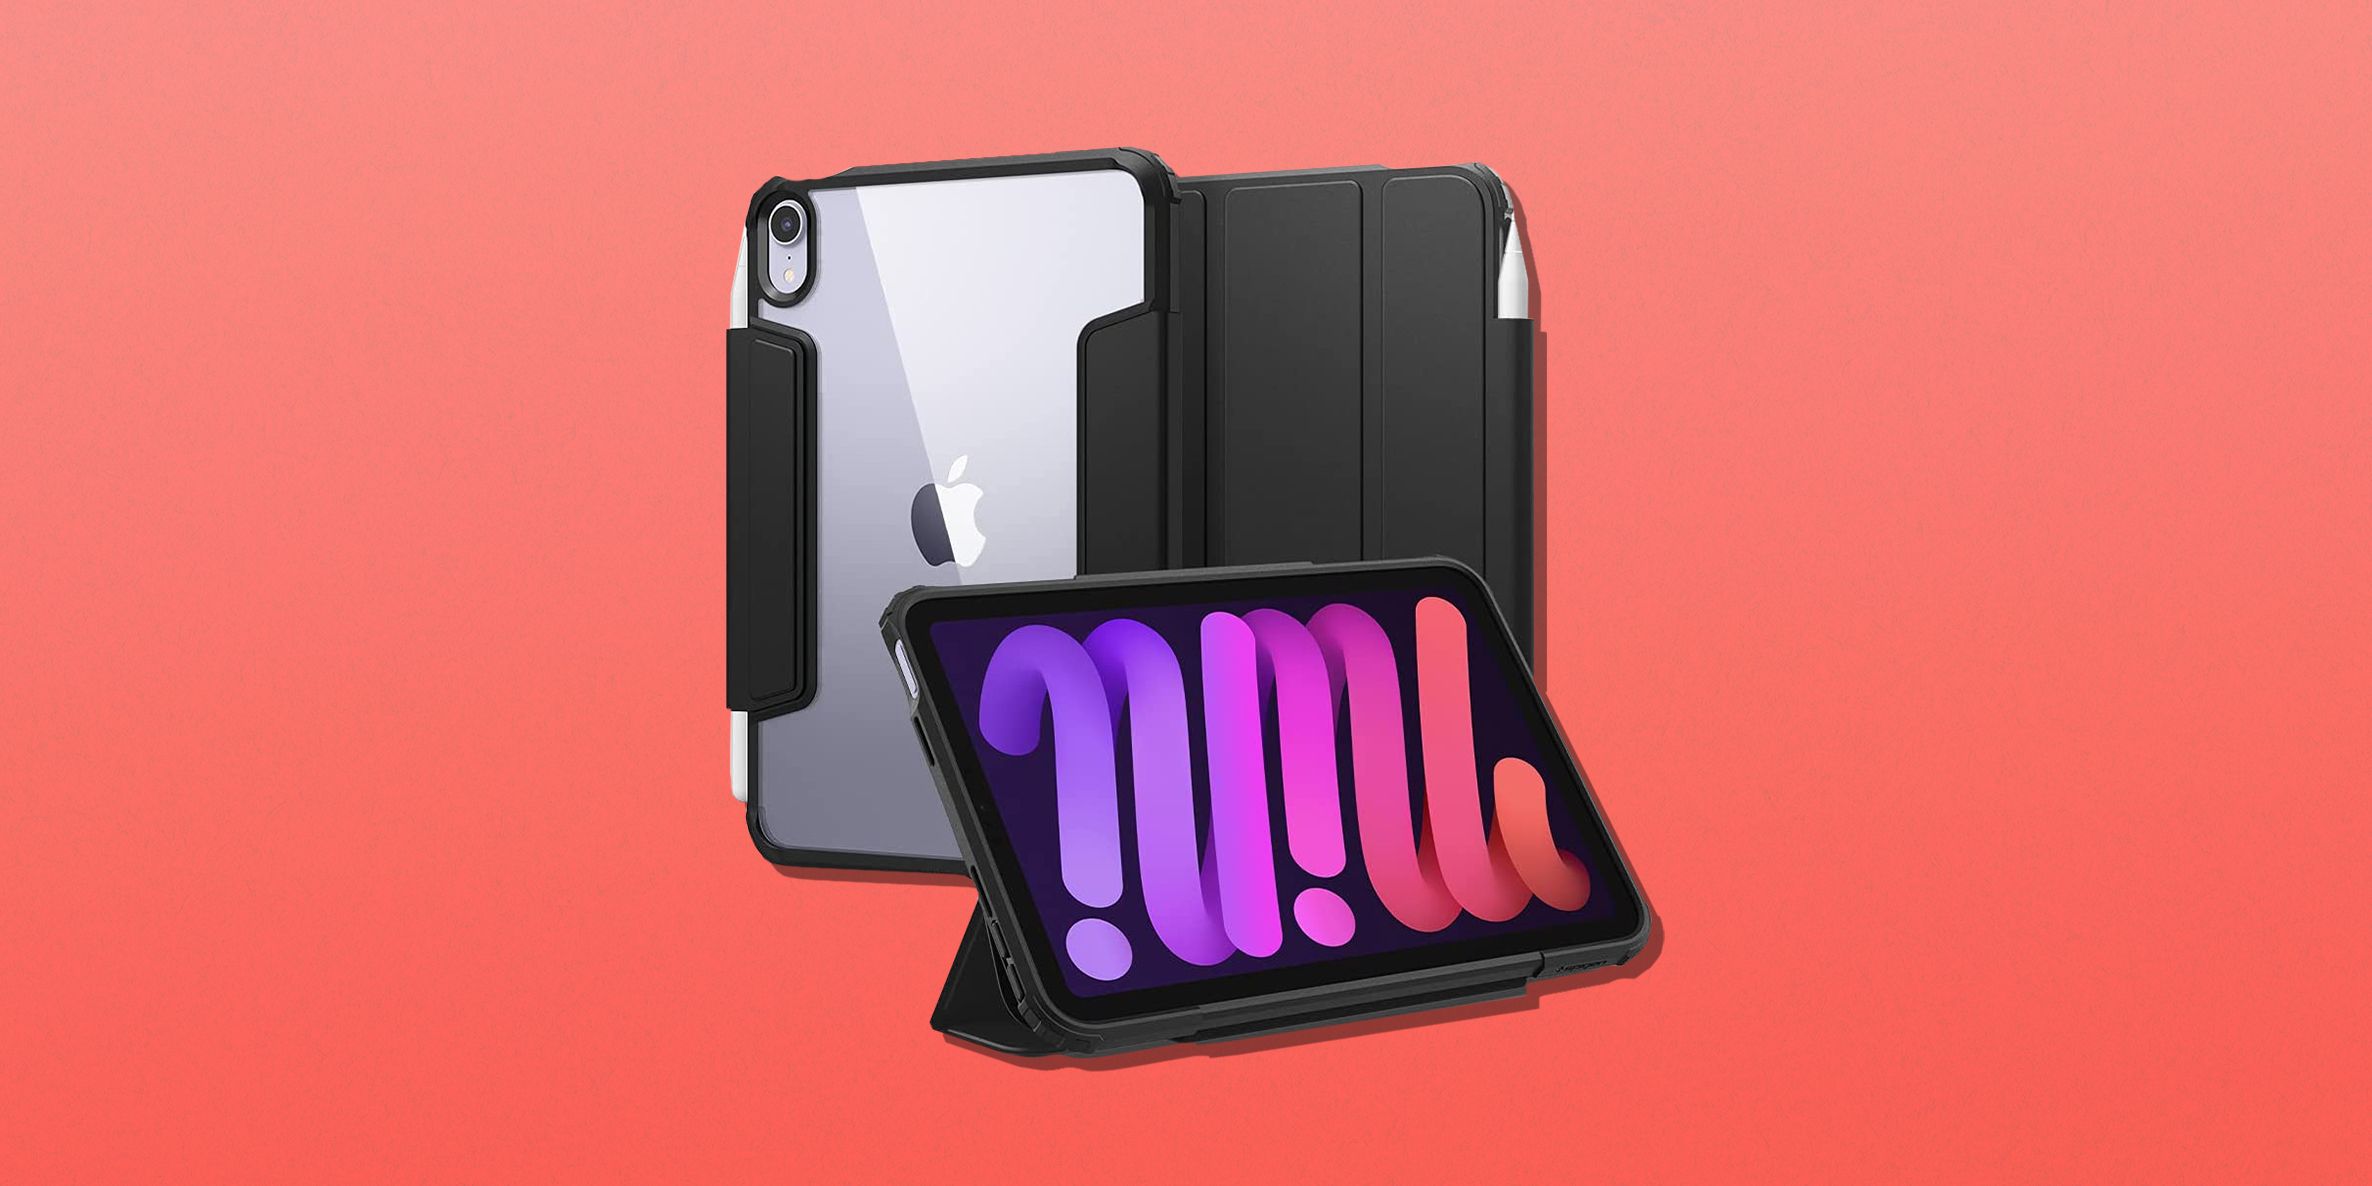 apple ipad mini cases